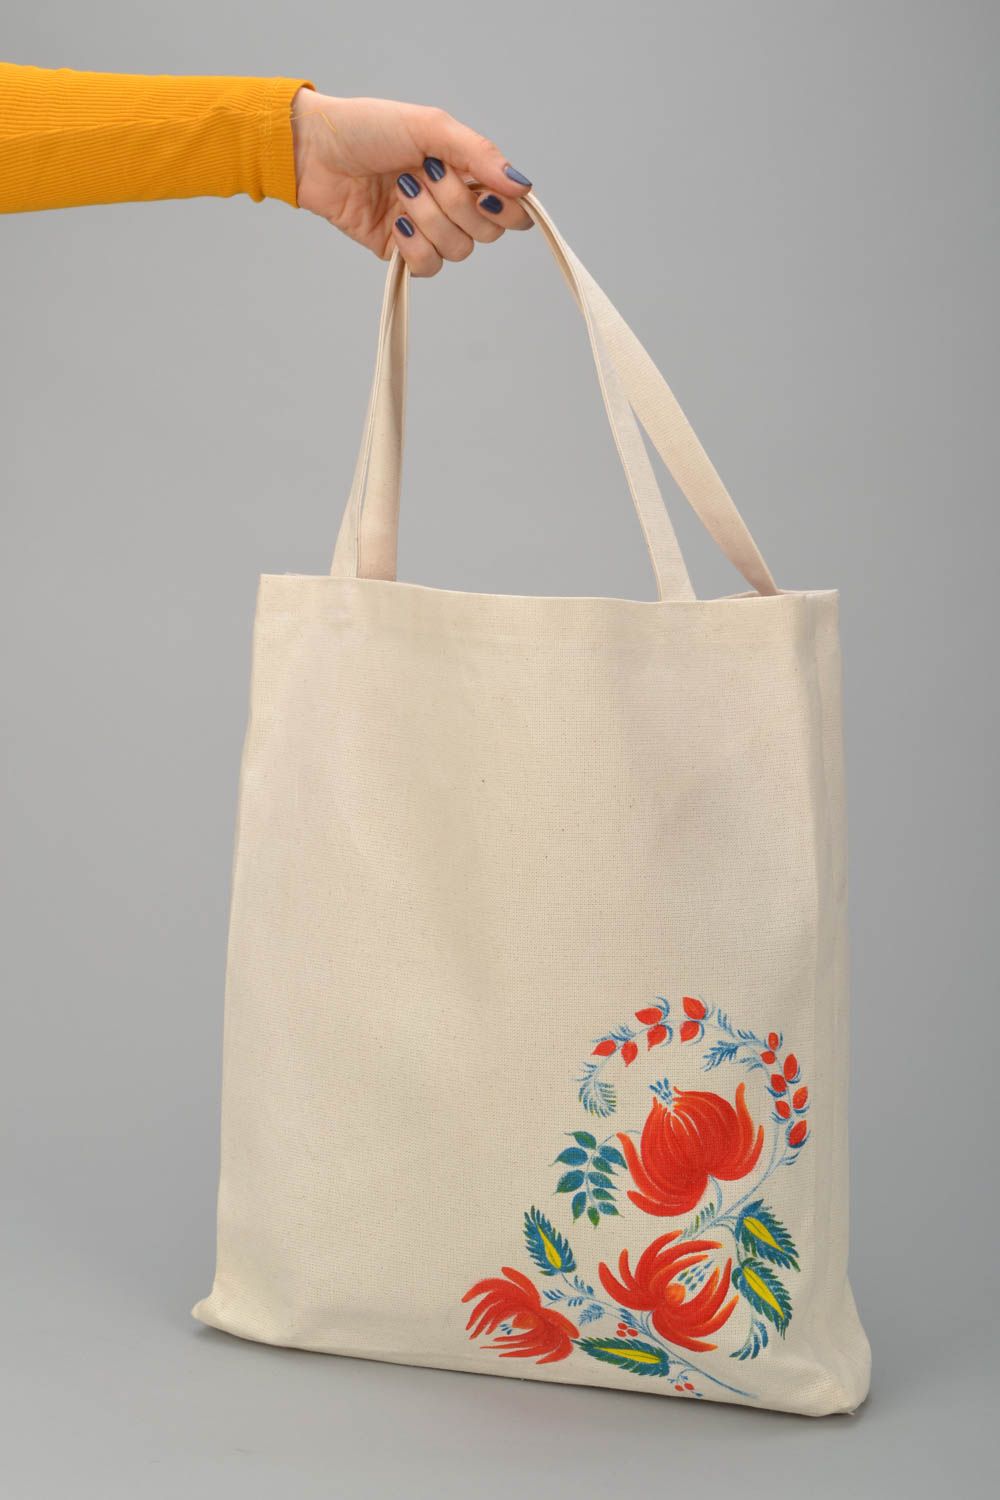 Textil Tasche mit Blumen  foto 2